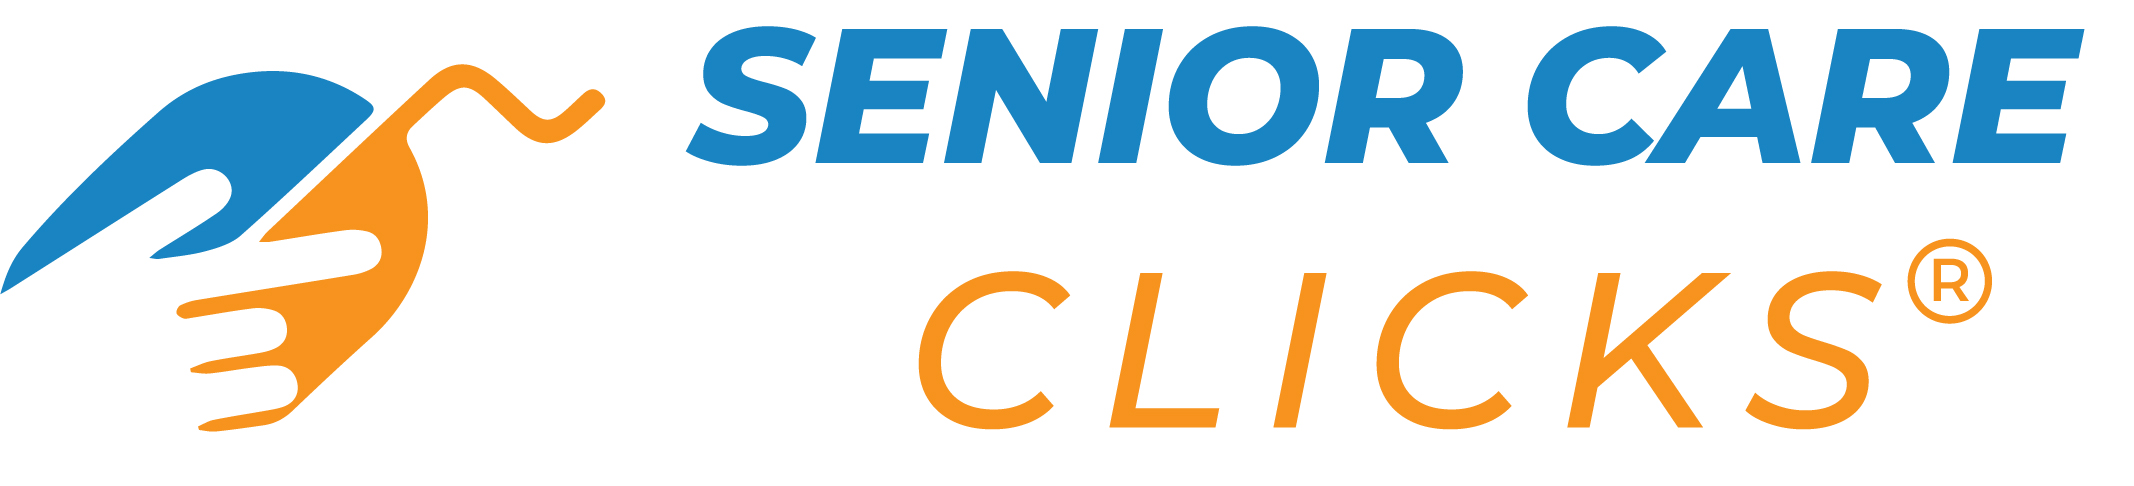 Senior Care Clicks